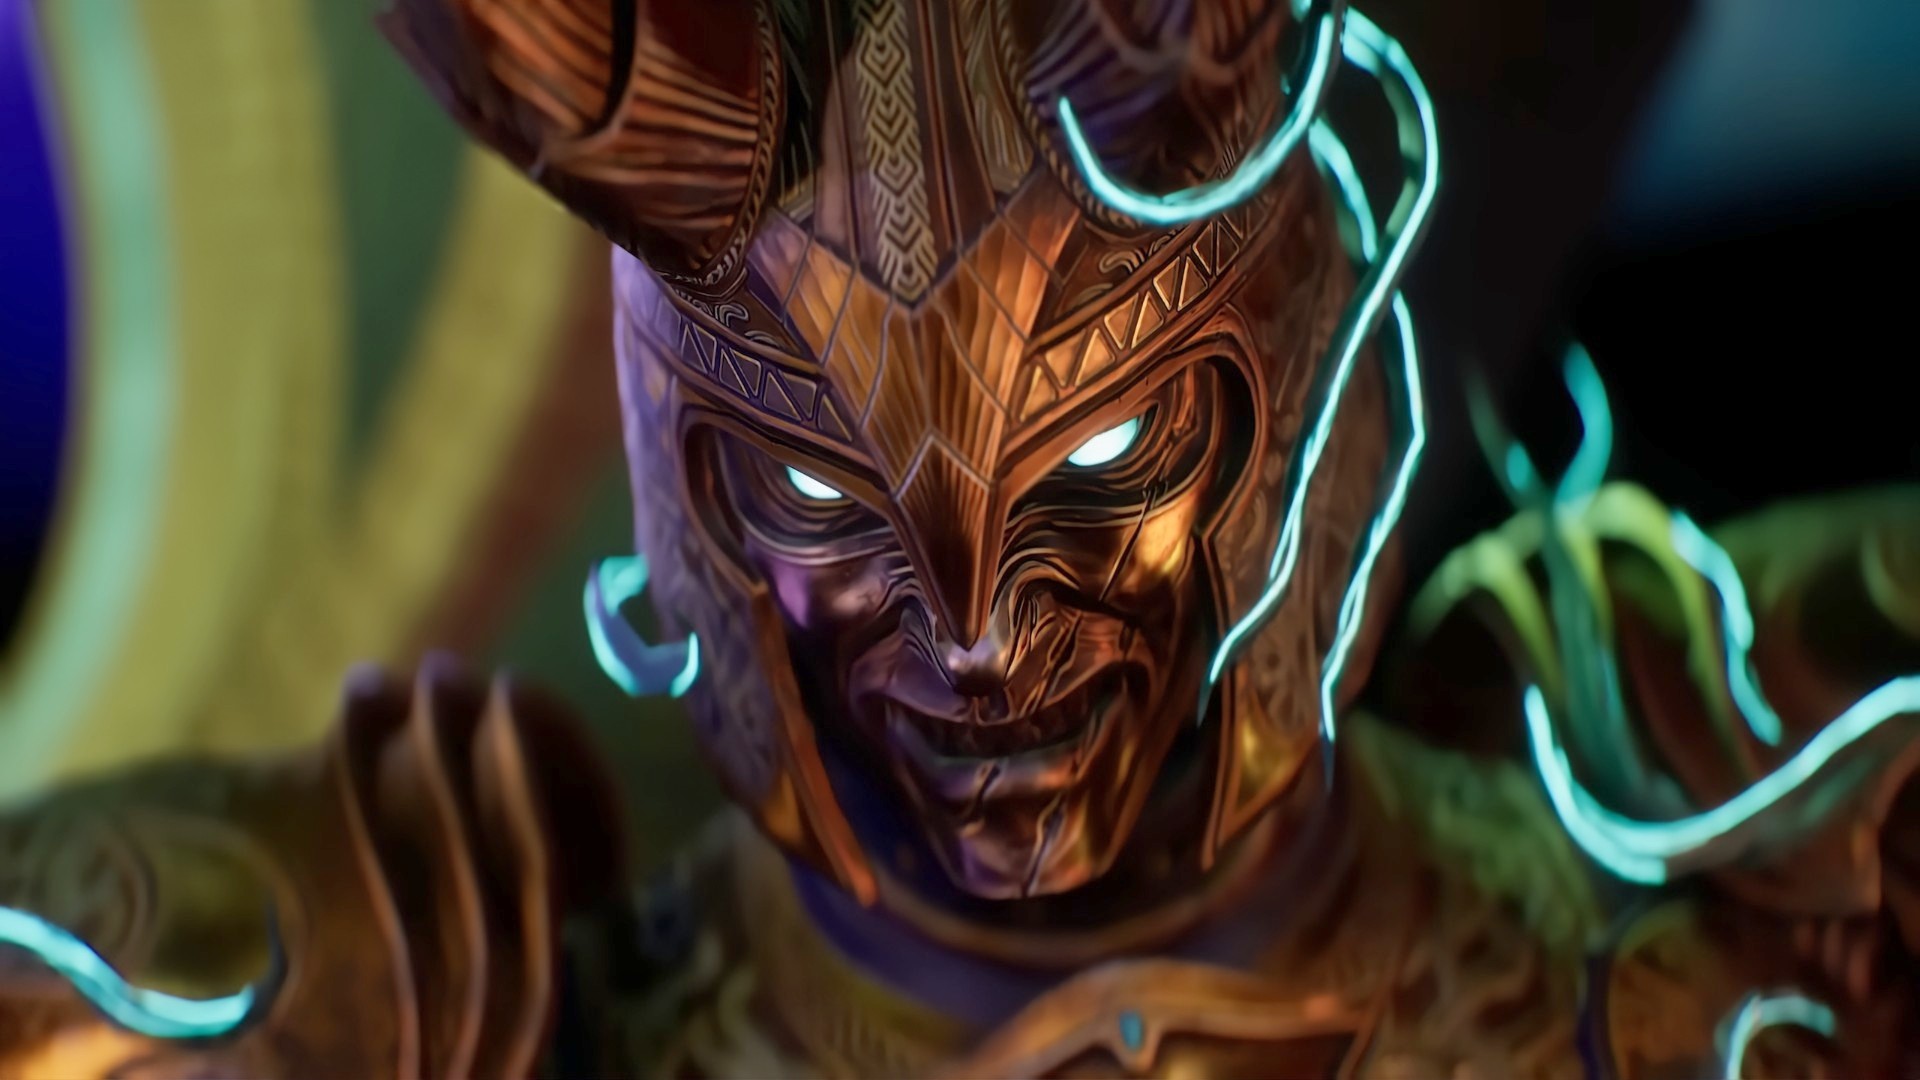 Asgard's Wrath 2 fills the fantasy RPG void ahead of Elder Scrolls 6